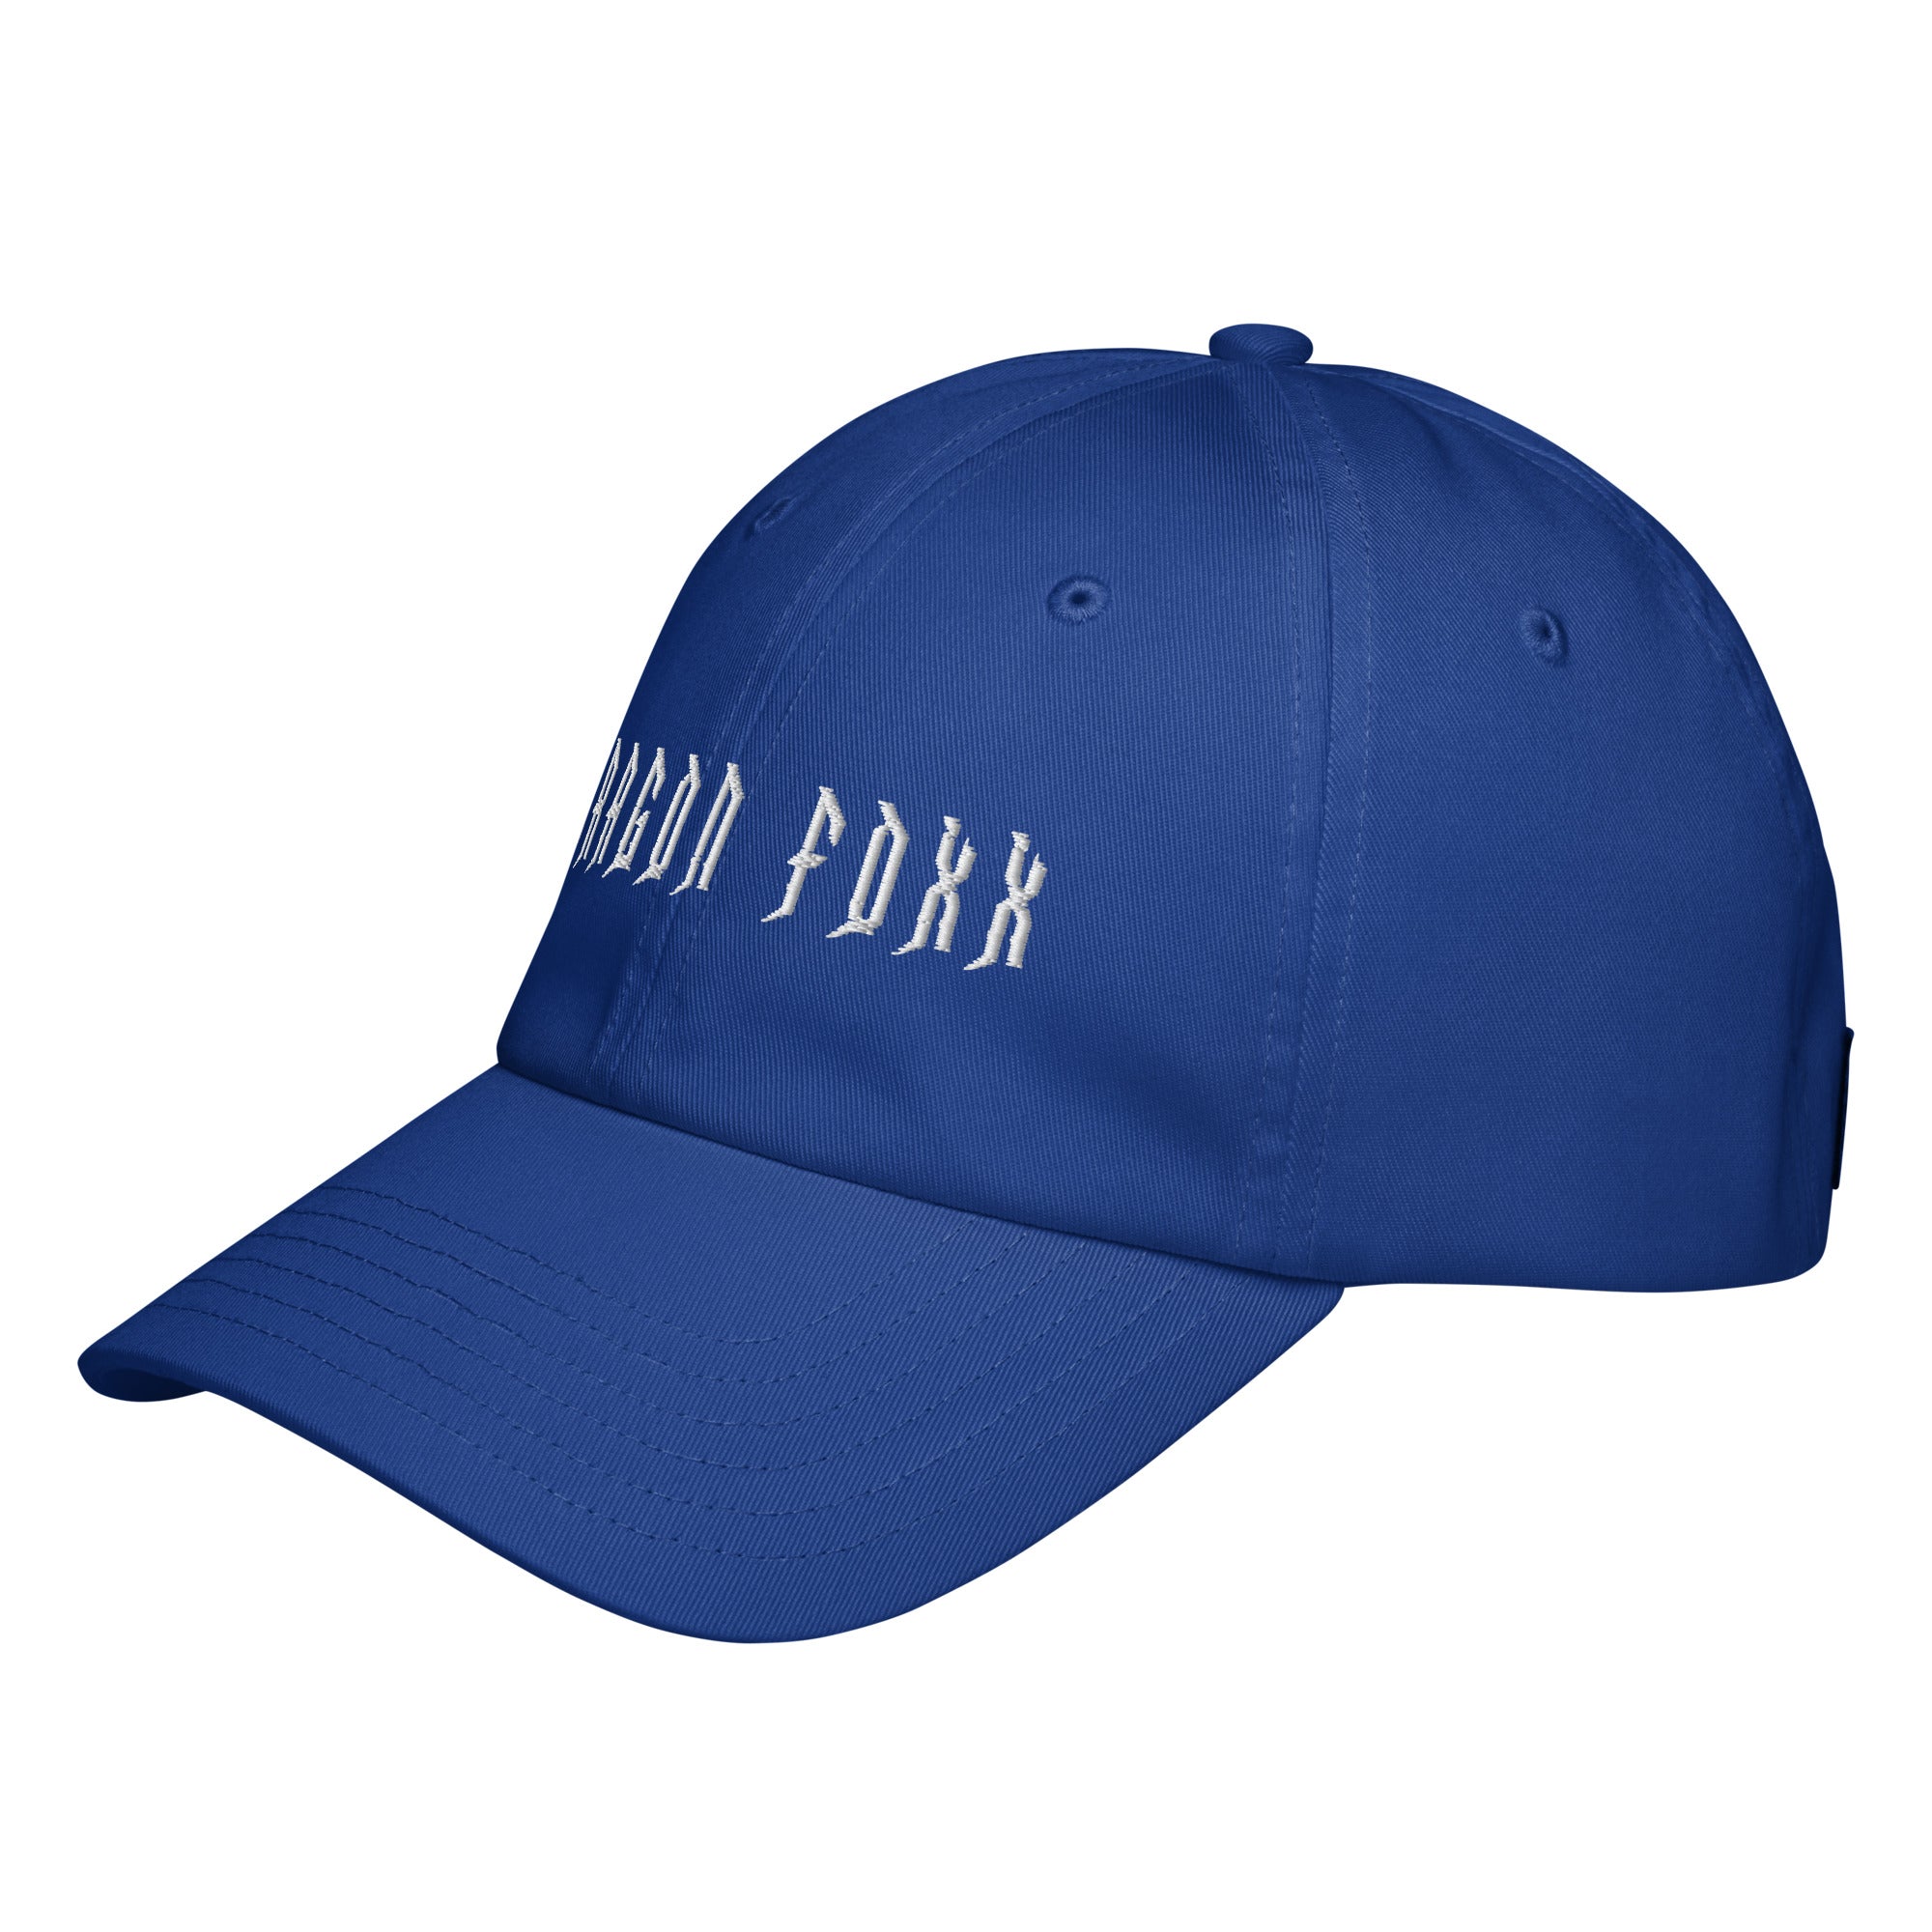 Dragon Foxx® - Under Armour® Dad Hat - Dad Hat - DRAGON FOXX™ - Dragon Foxx® - Under Armour® Dad Hat - 6473955_19346 - Royal Blue - Accessories - Black - Dad Hats